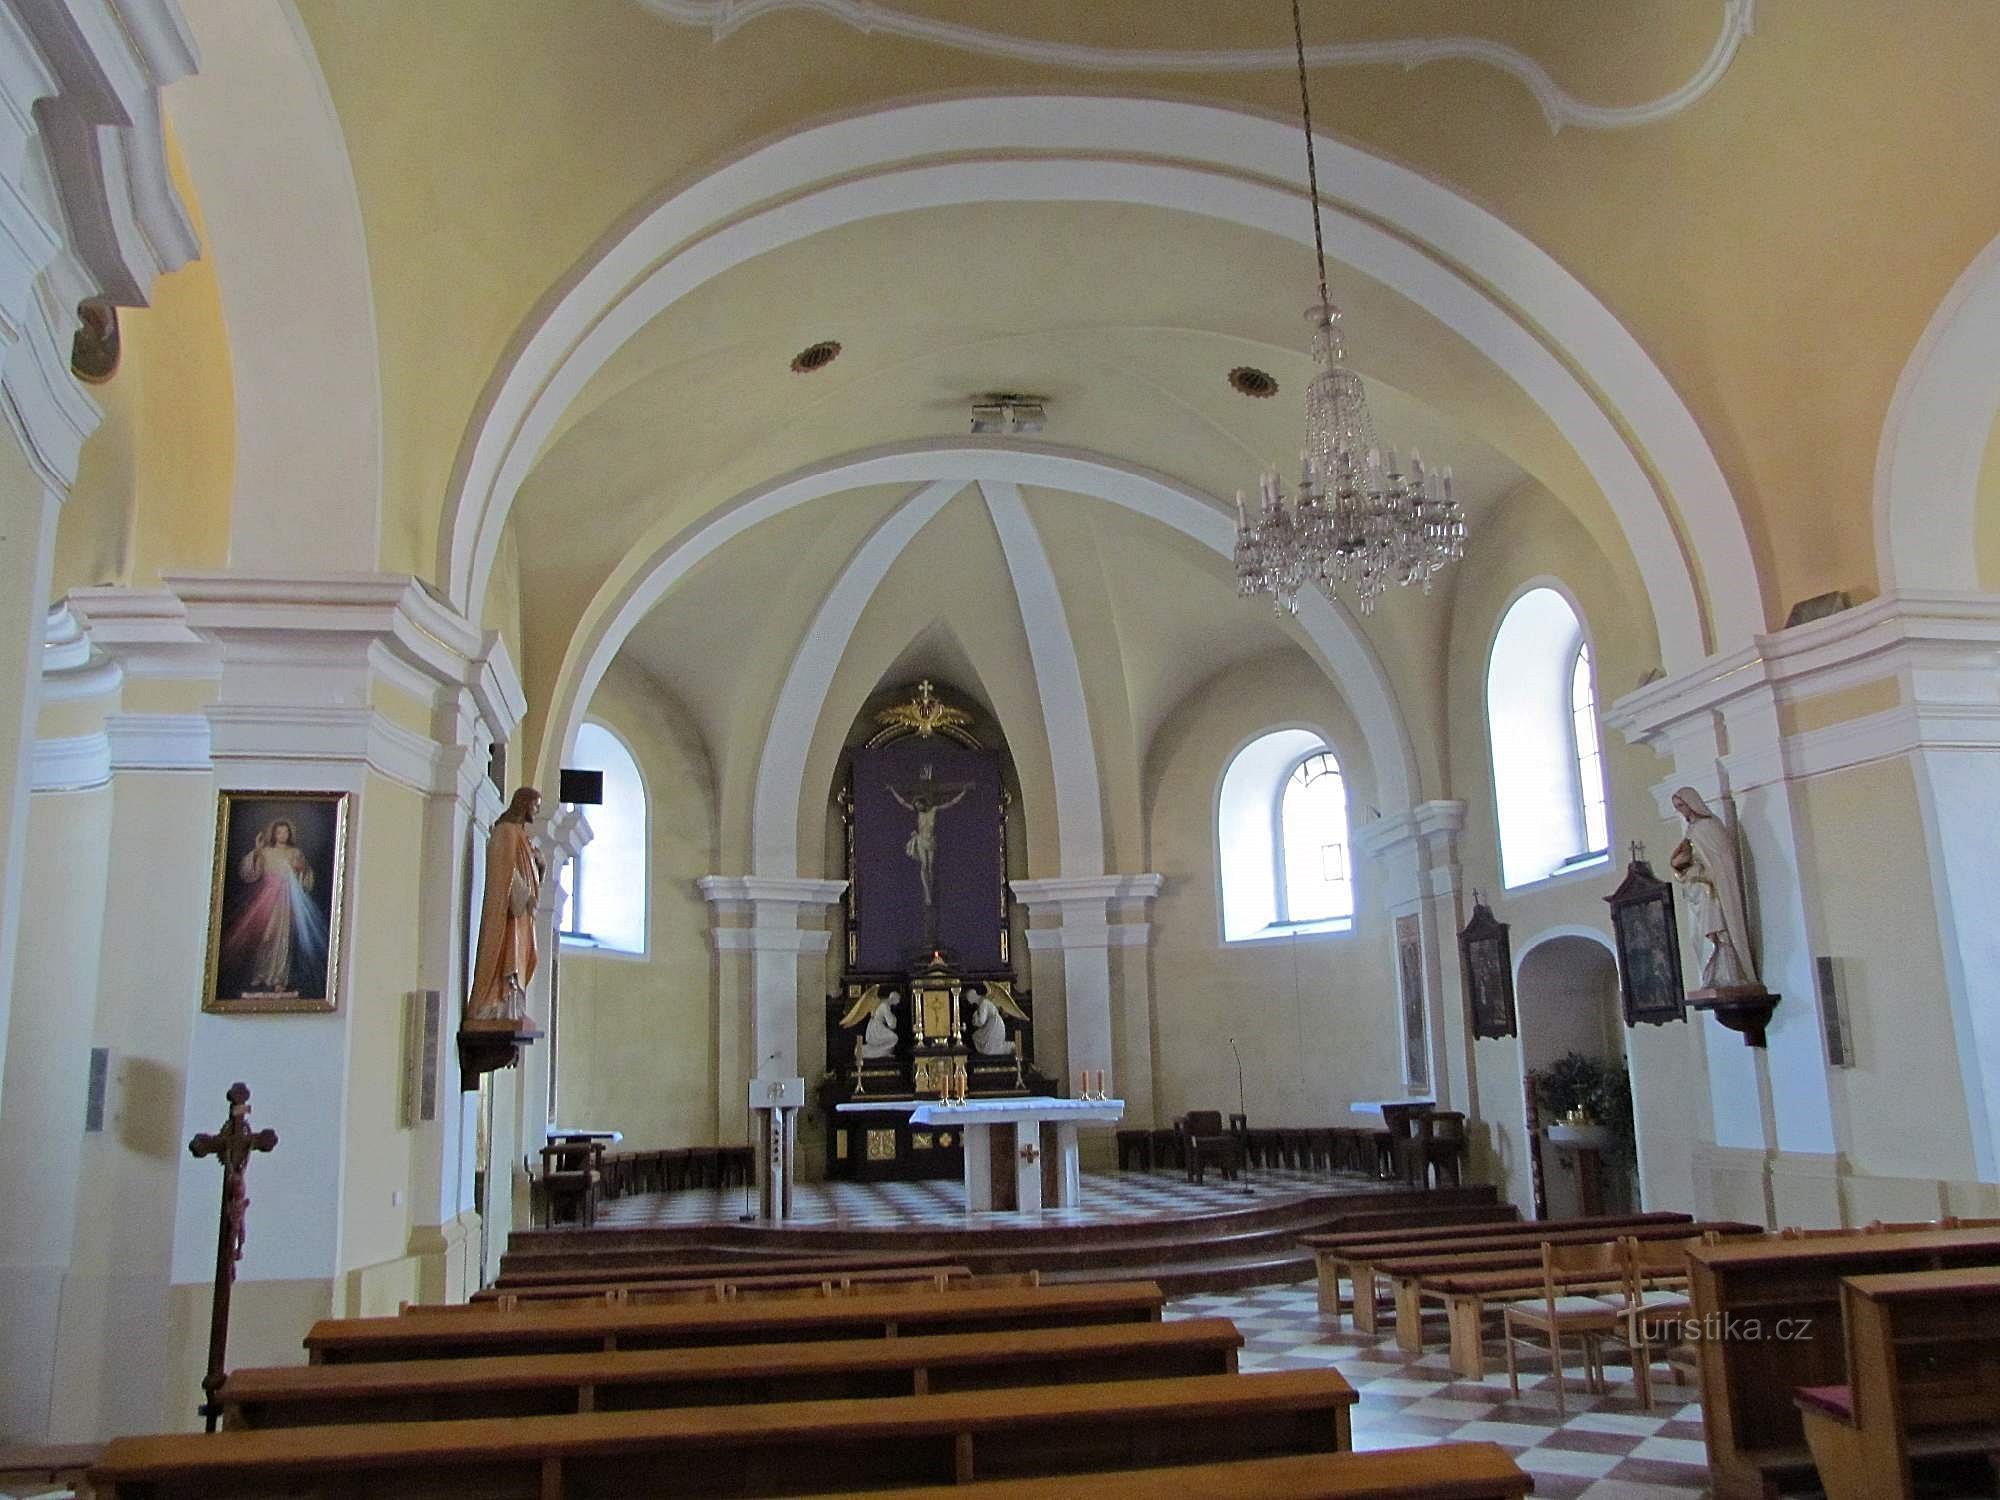 Valašskoklobucký crkva Uzvišenja Svetog Križa